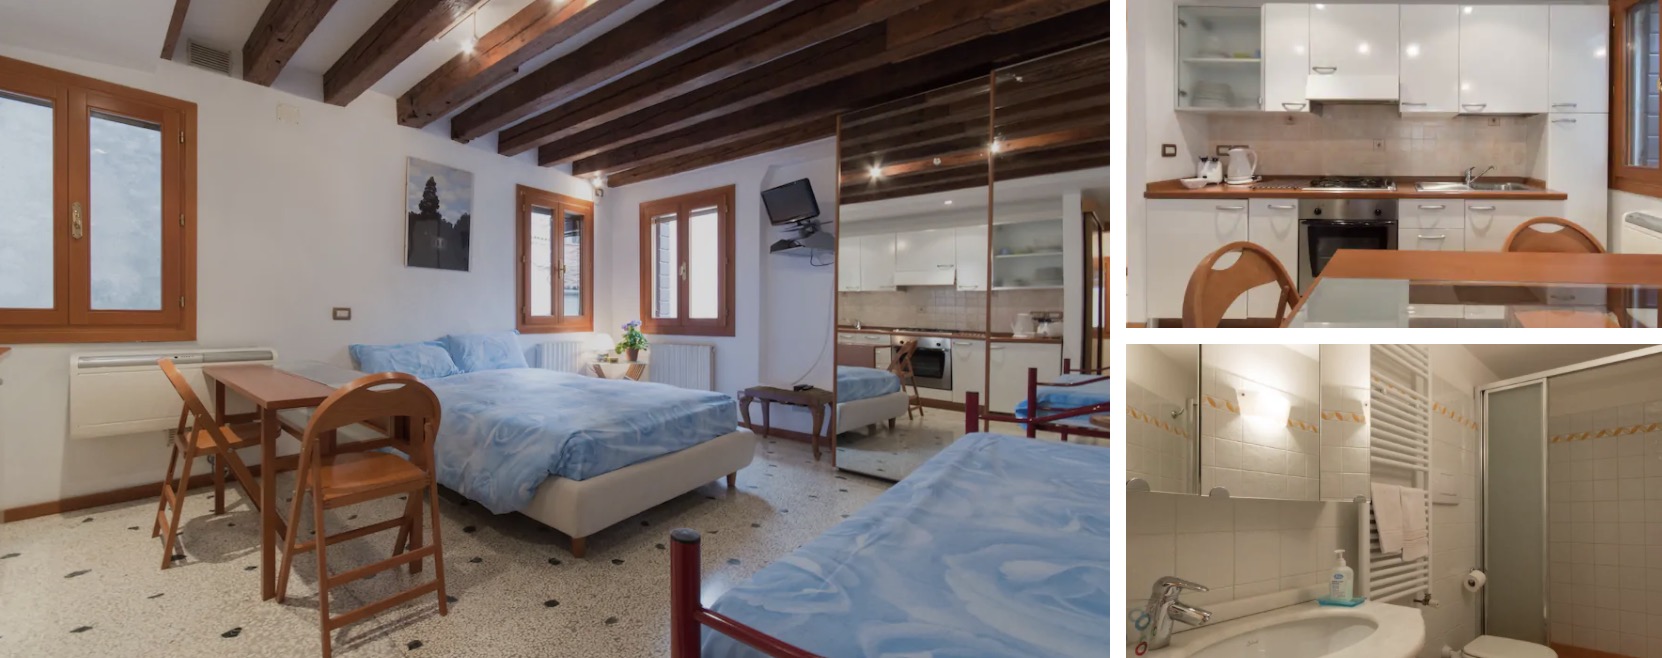 Studio Airbnb à Venise dans le quartier de Cannaregio